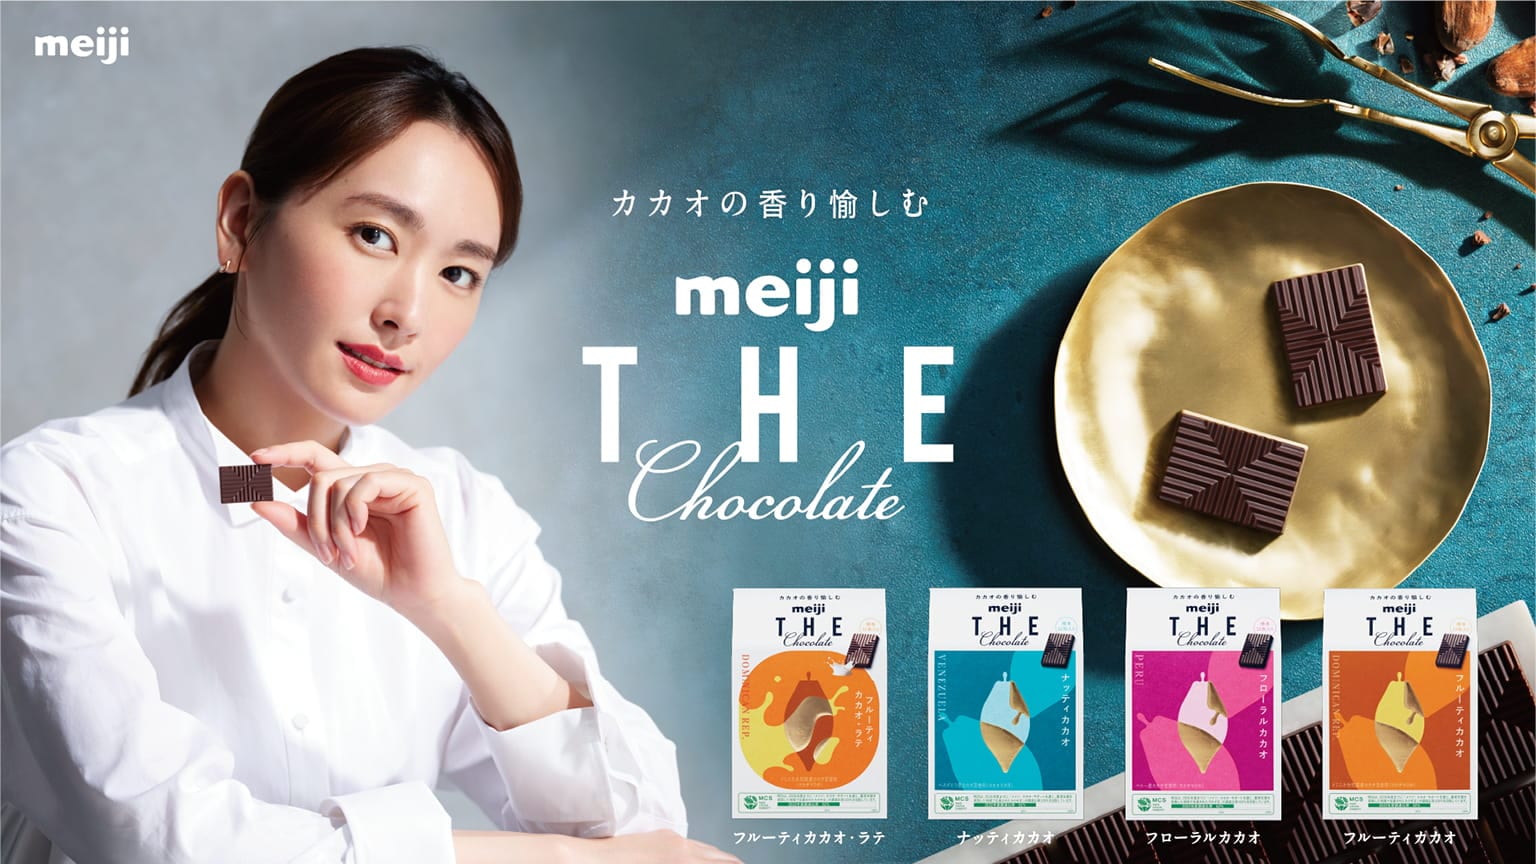 カカオの香り愉しむ meiji THE Chocolate